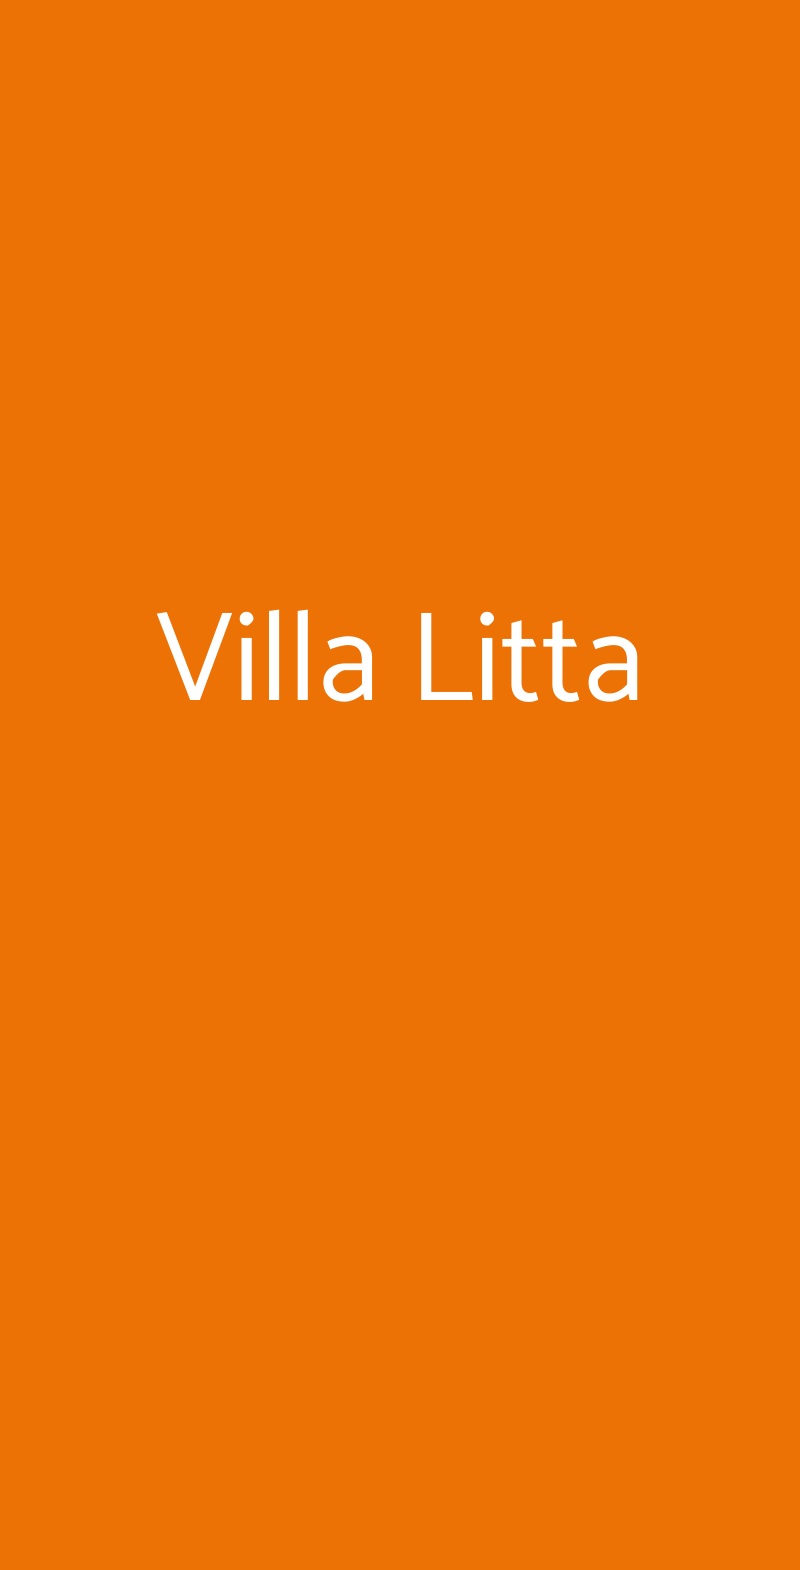 Villa Litta Milano menù 1 pagina